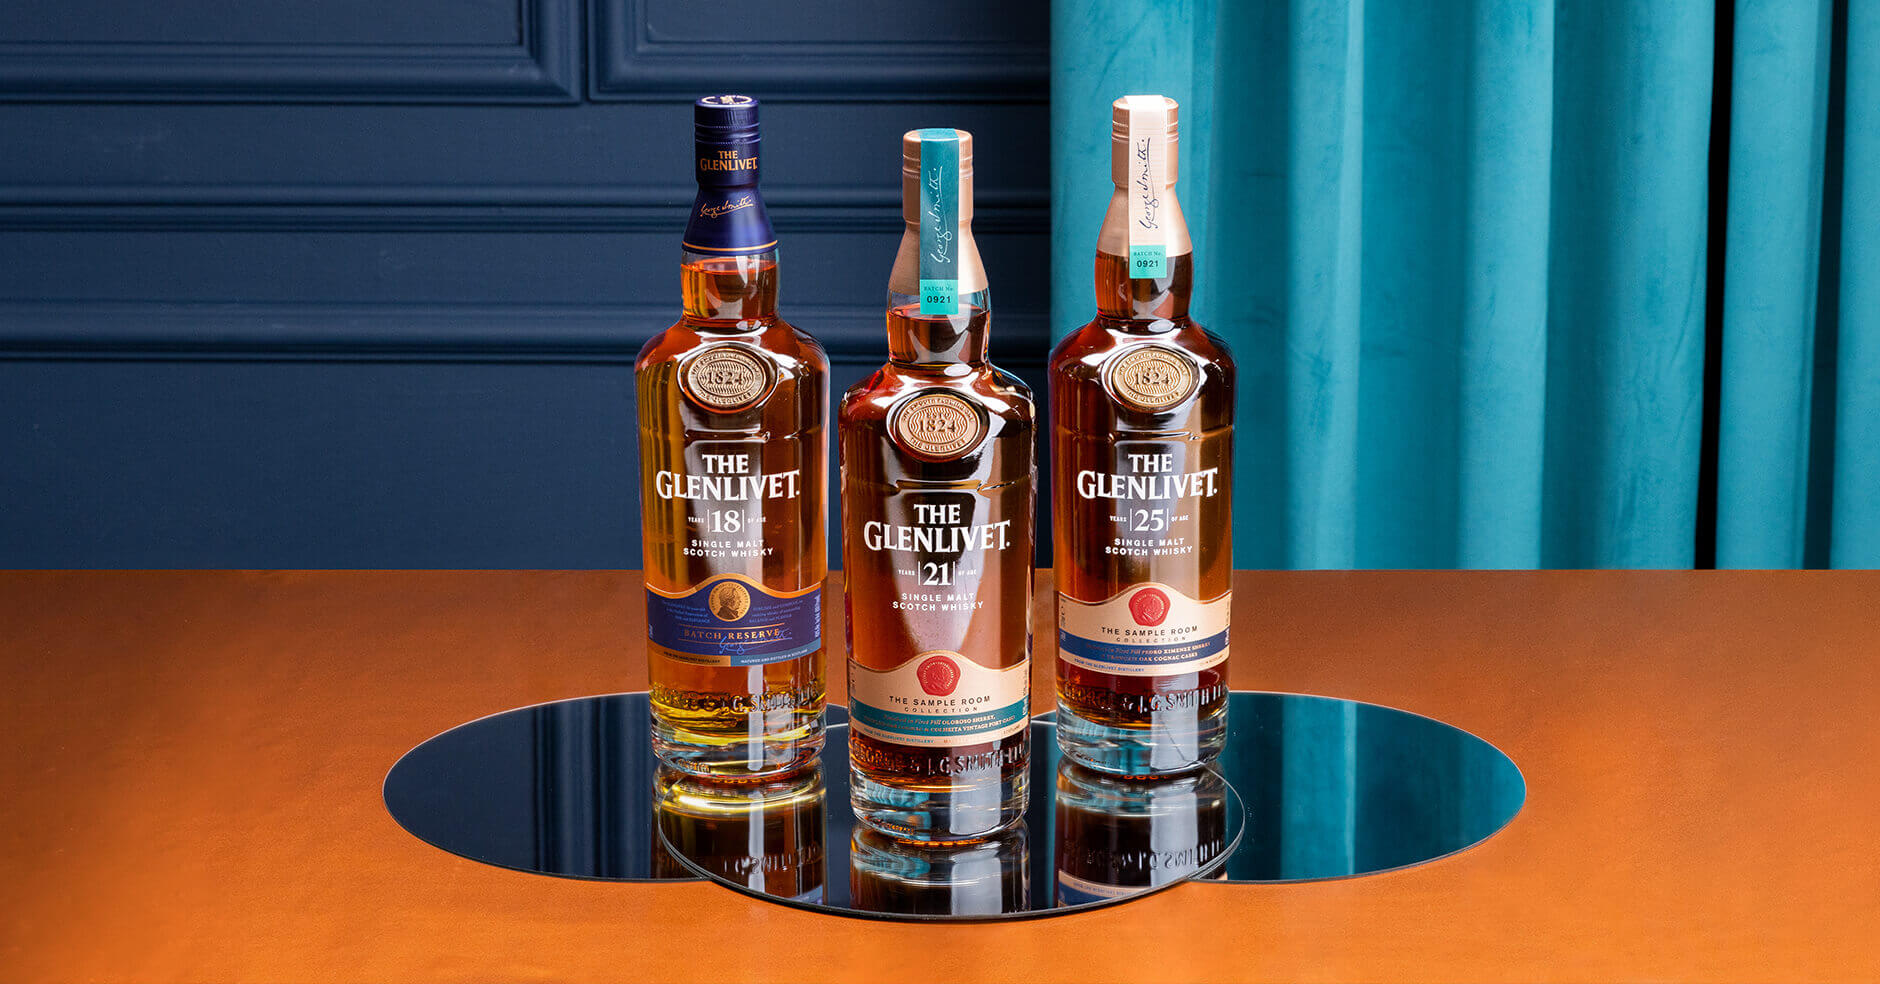 The Glenlivet Scotch Whisky, 18 ans d'age - Batch Réserve - Boursot - EN